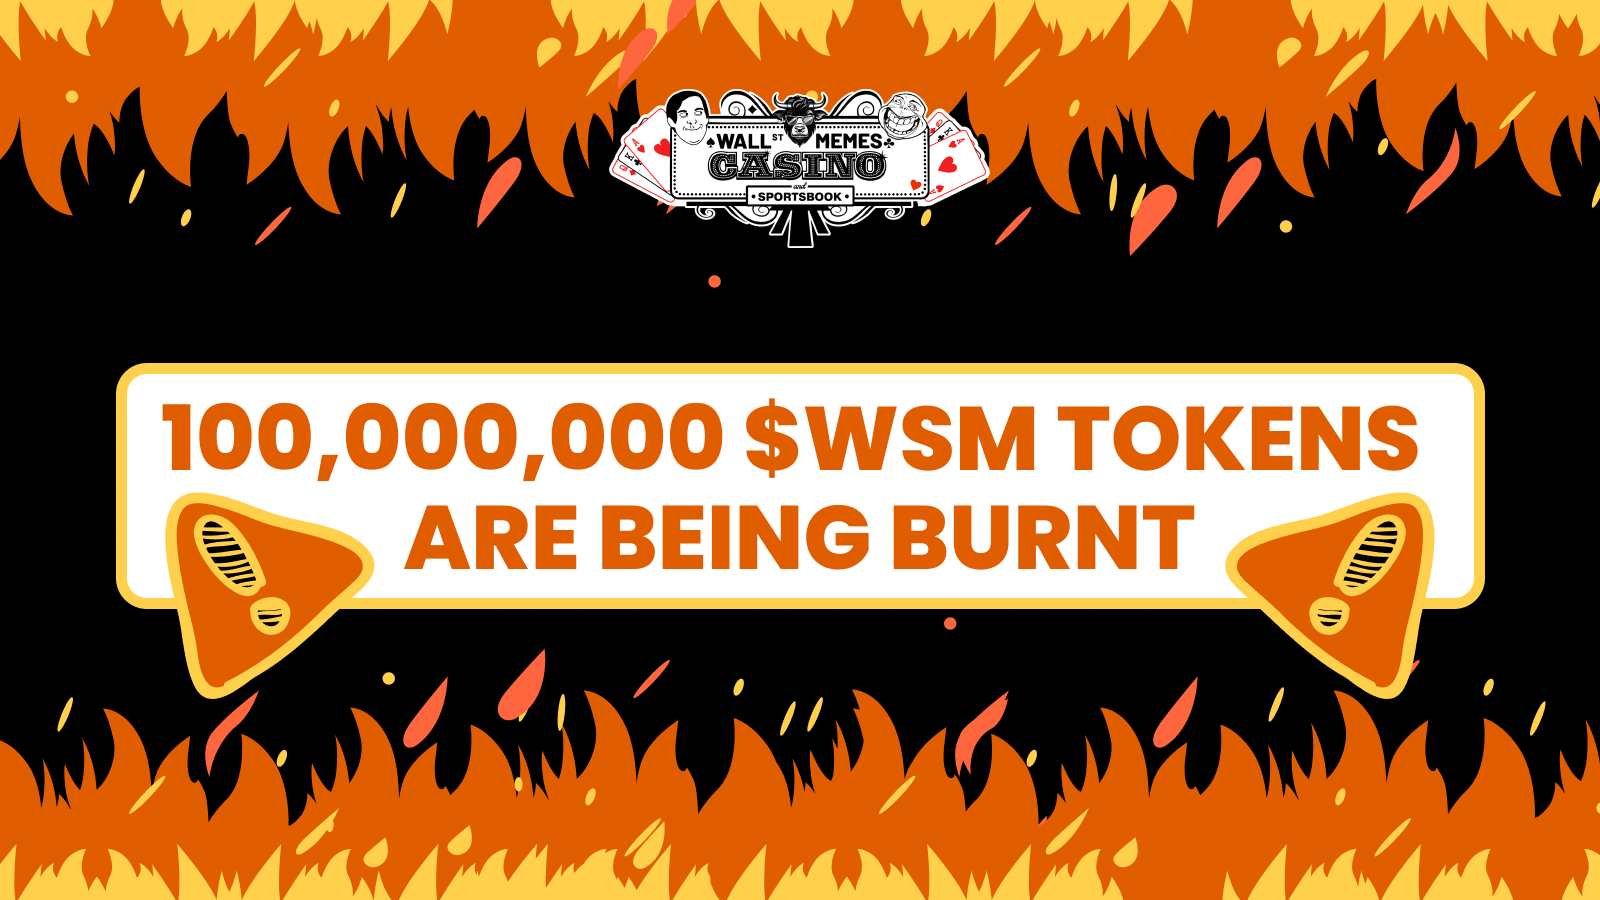 نيران في أعلى وأسفل الصورة تتوسّطها عبارة "حرق عدد 100,000,000 من عملة WSM"